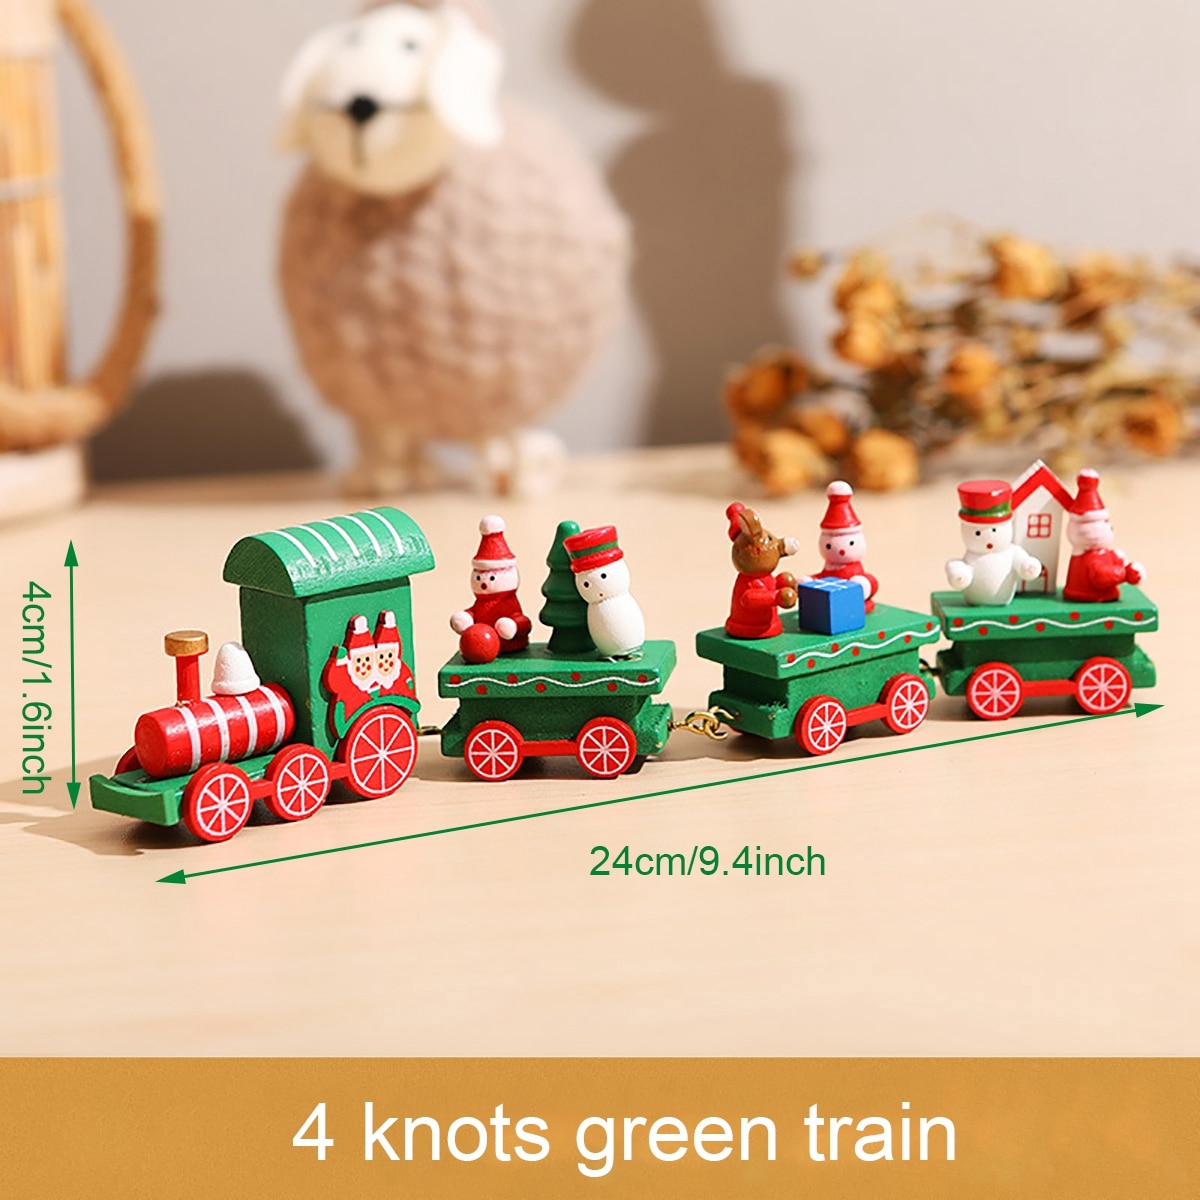 Wooden train8